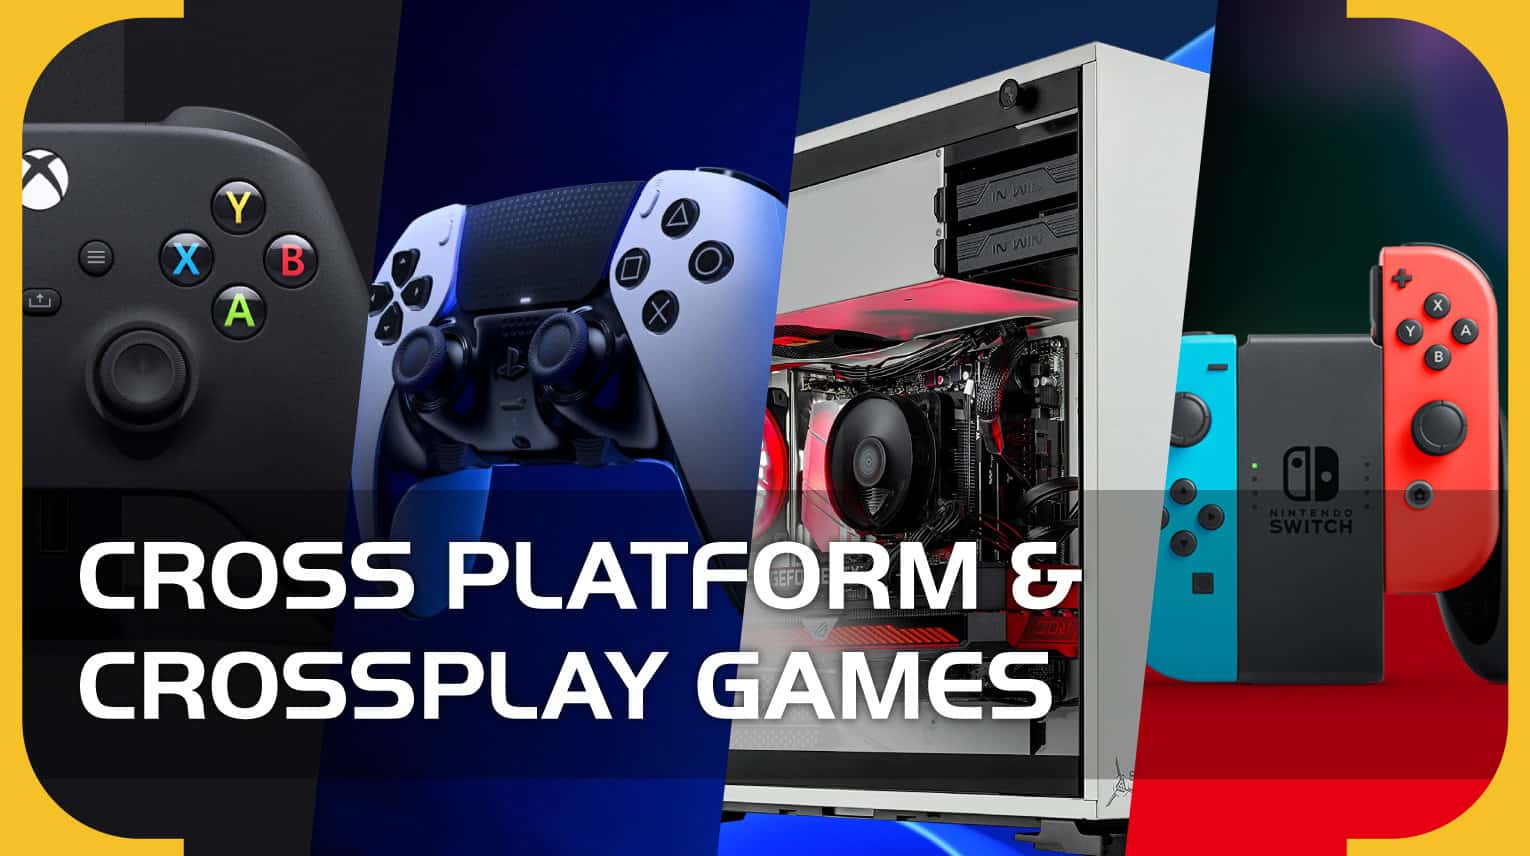 cijfer aankunnen uitblinken Every Cross Platform & Crossplay Game (October 2022) - PS5, Xbox Series X,  PC, PS4, Xbox One, Nintendo Switch) - VideoGamer.com